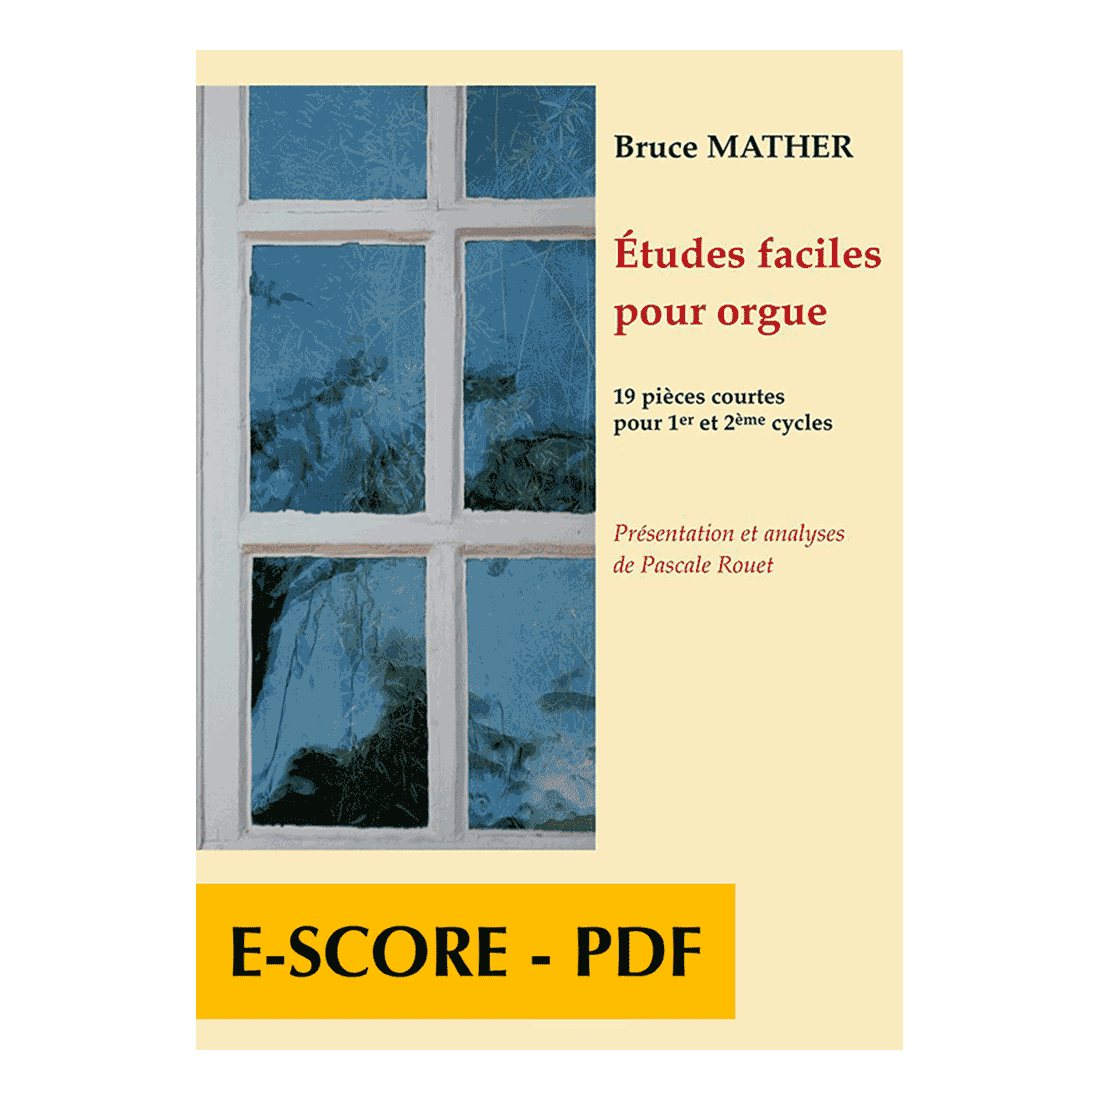 Etudes faciles pour orgue - version française - E-score PDF